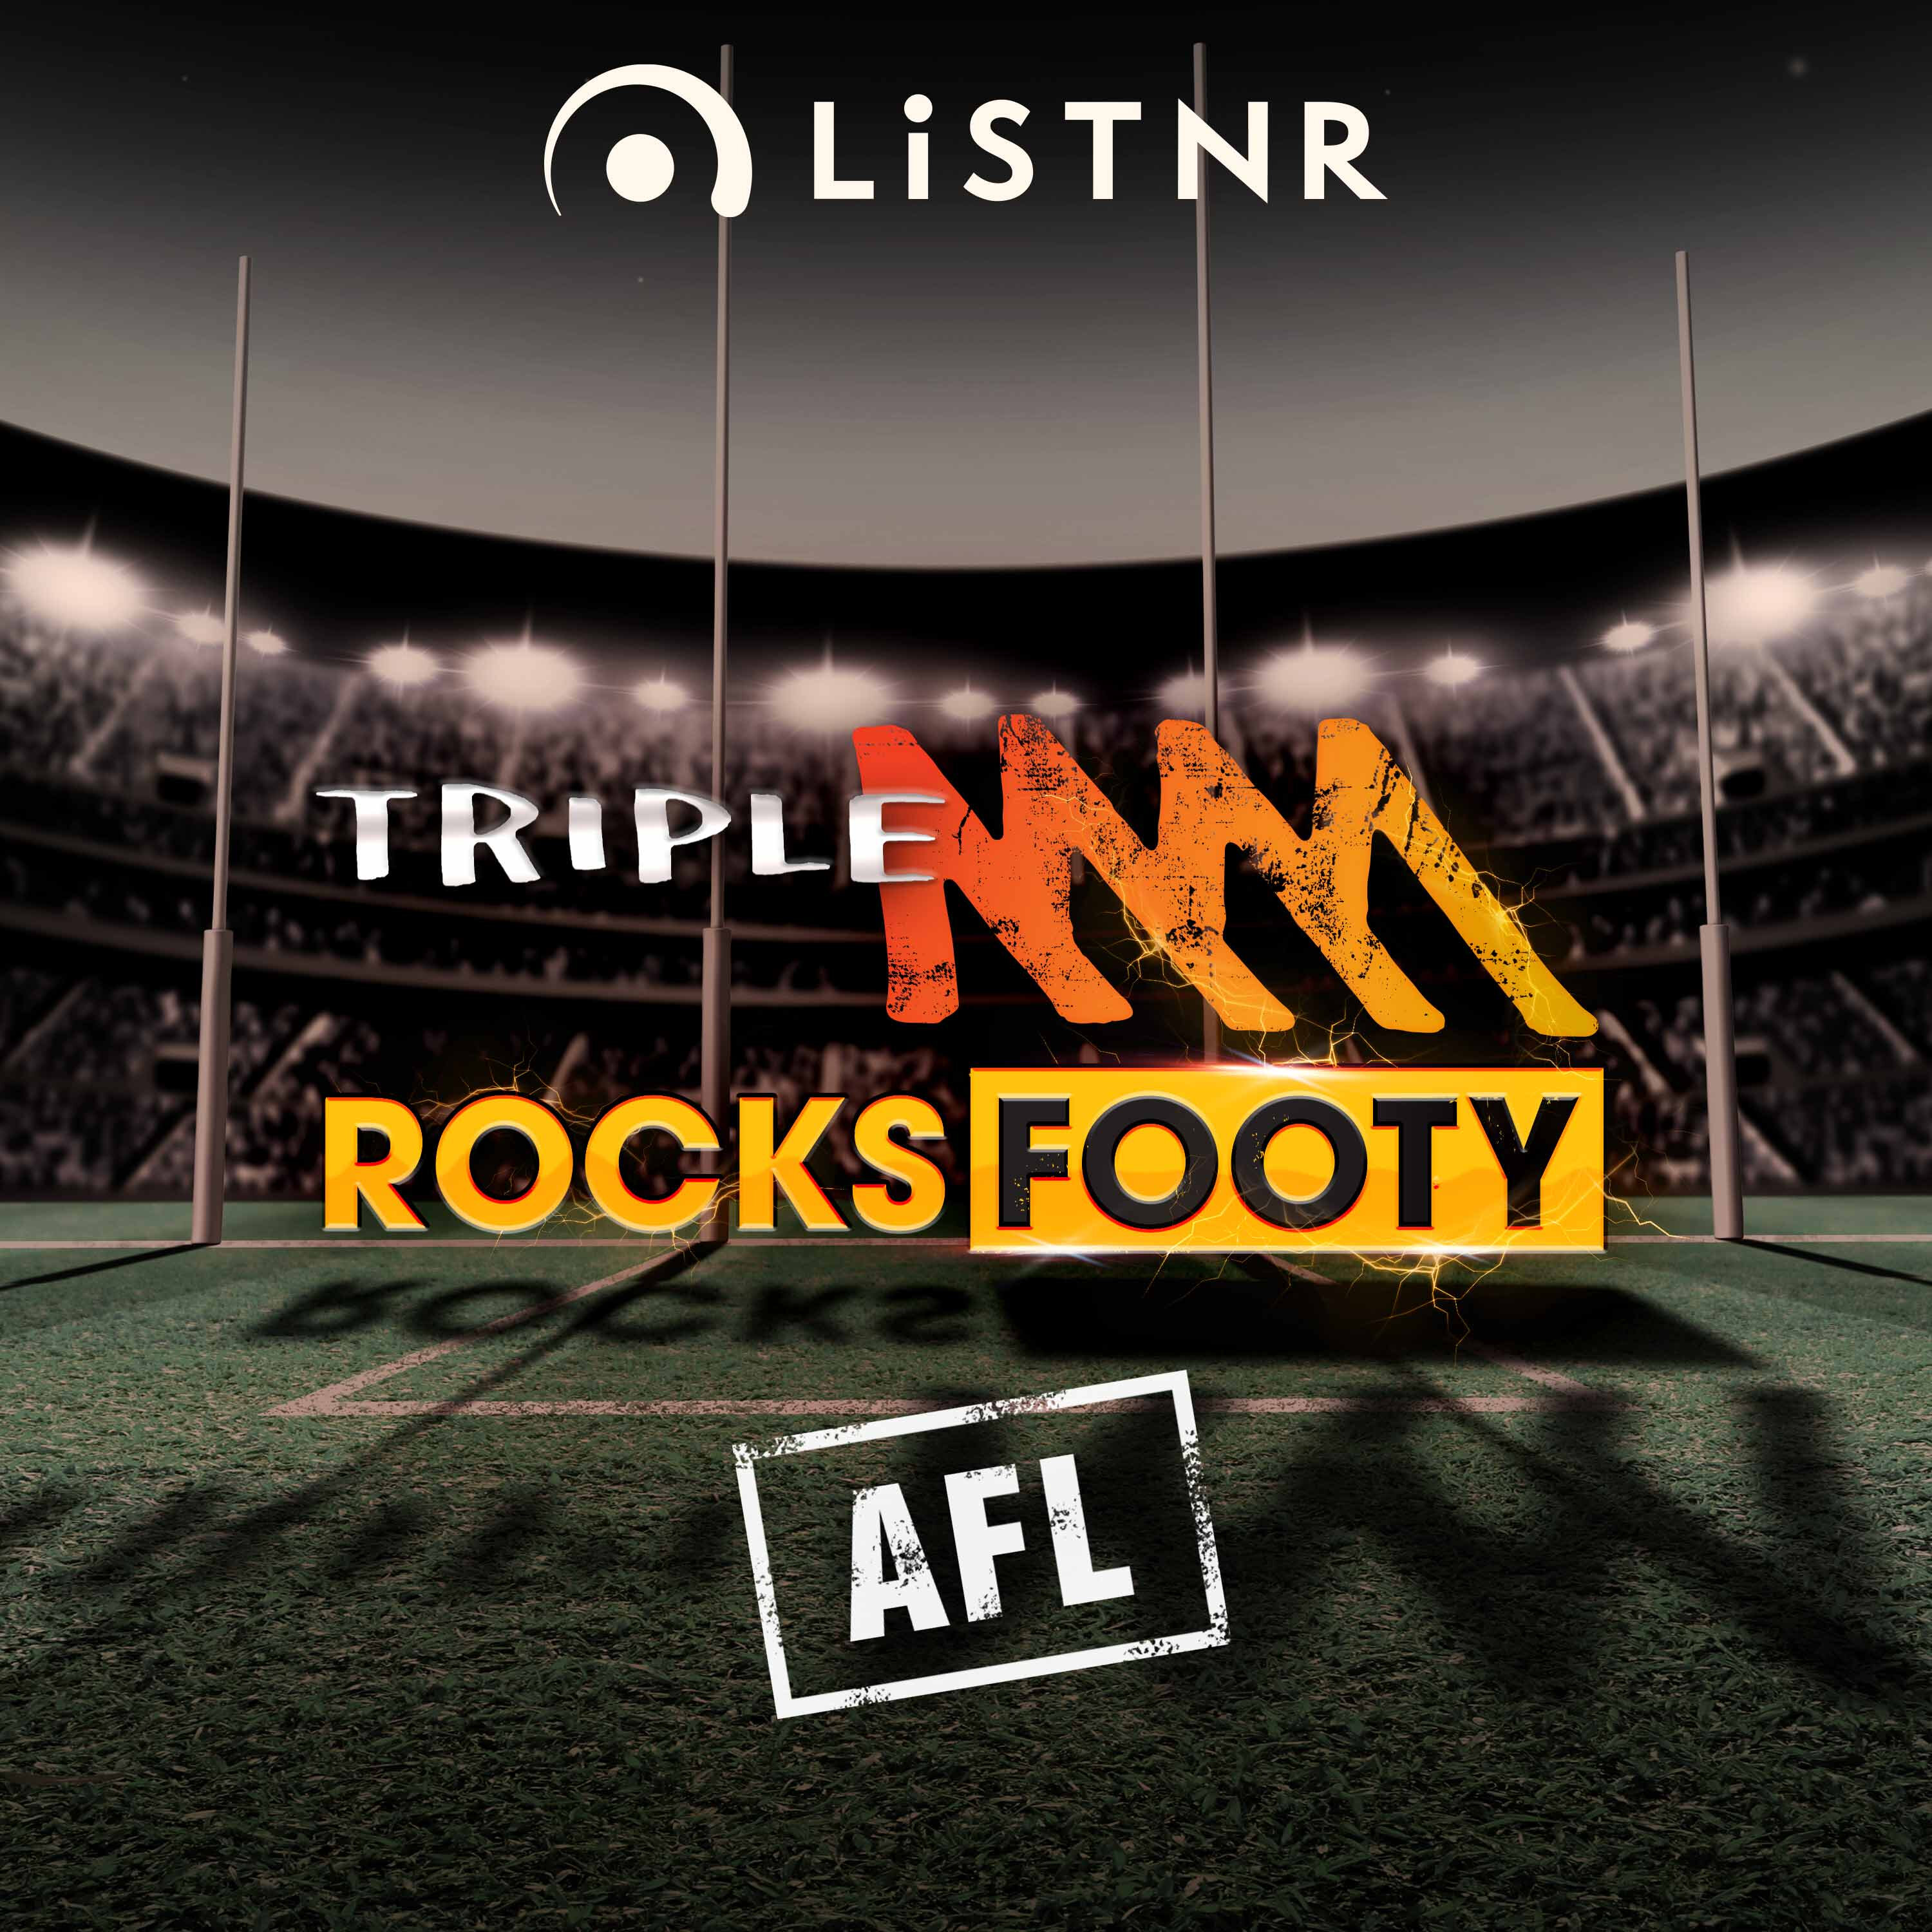 Triple M Rocks Footy AFL